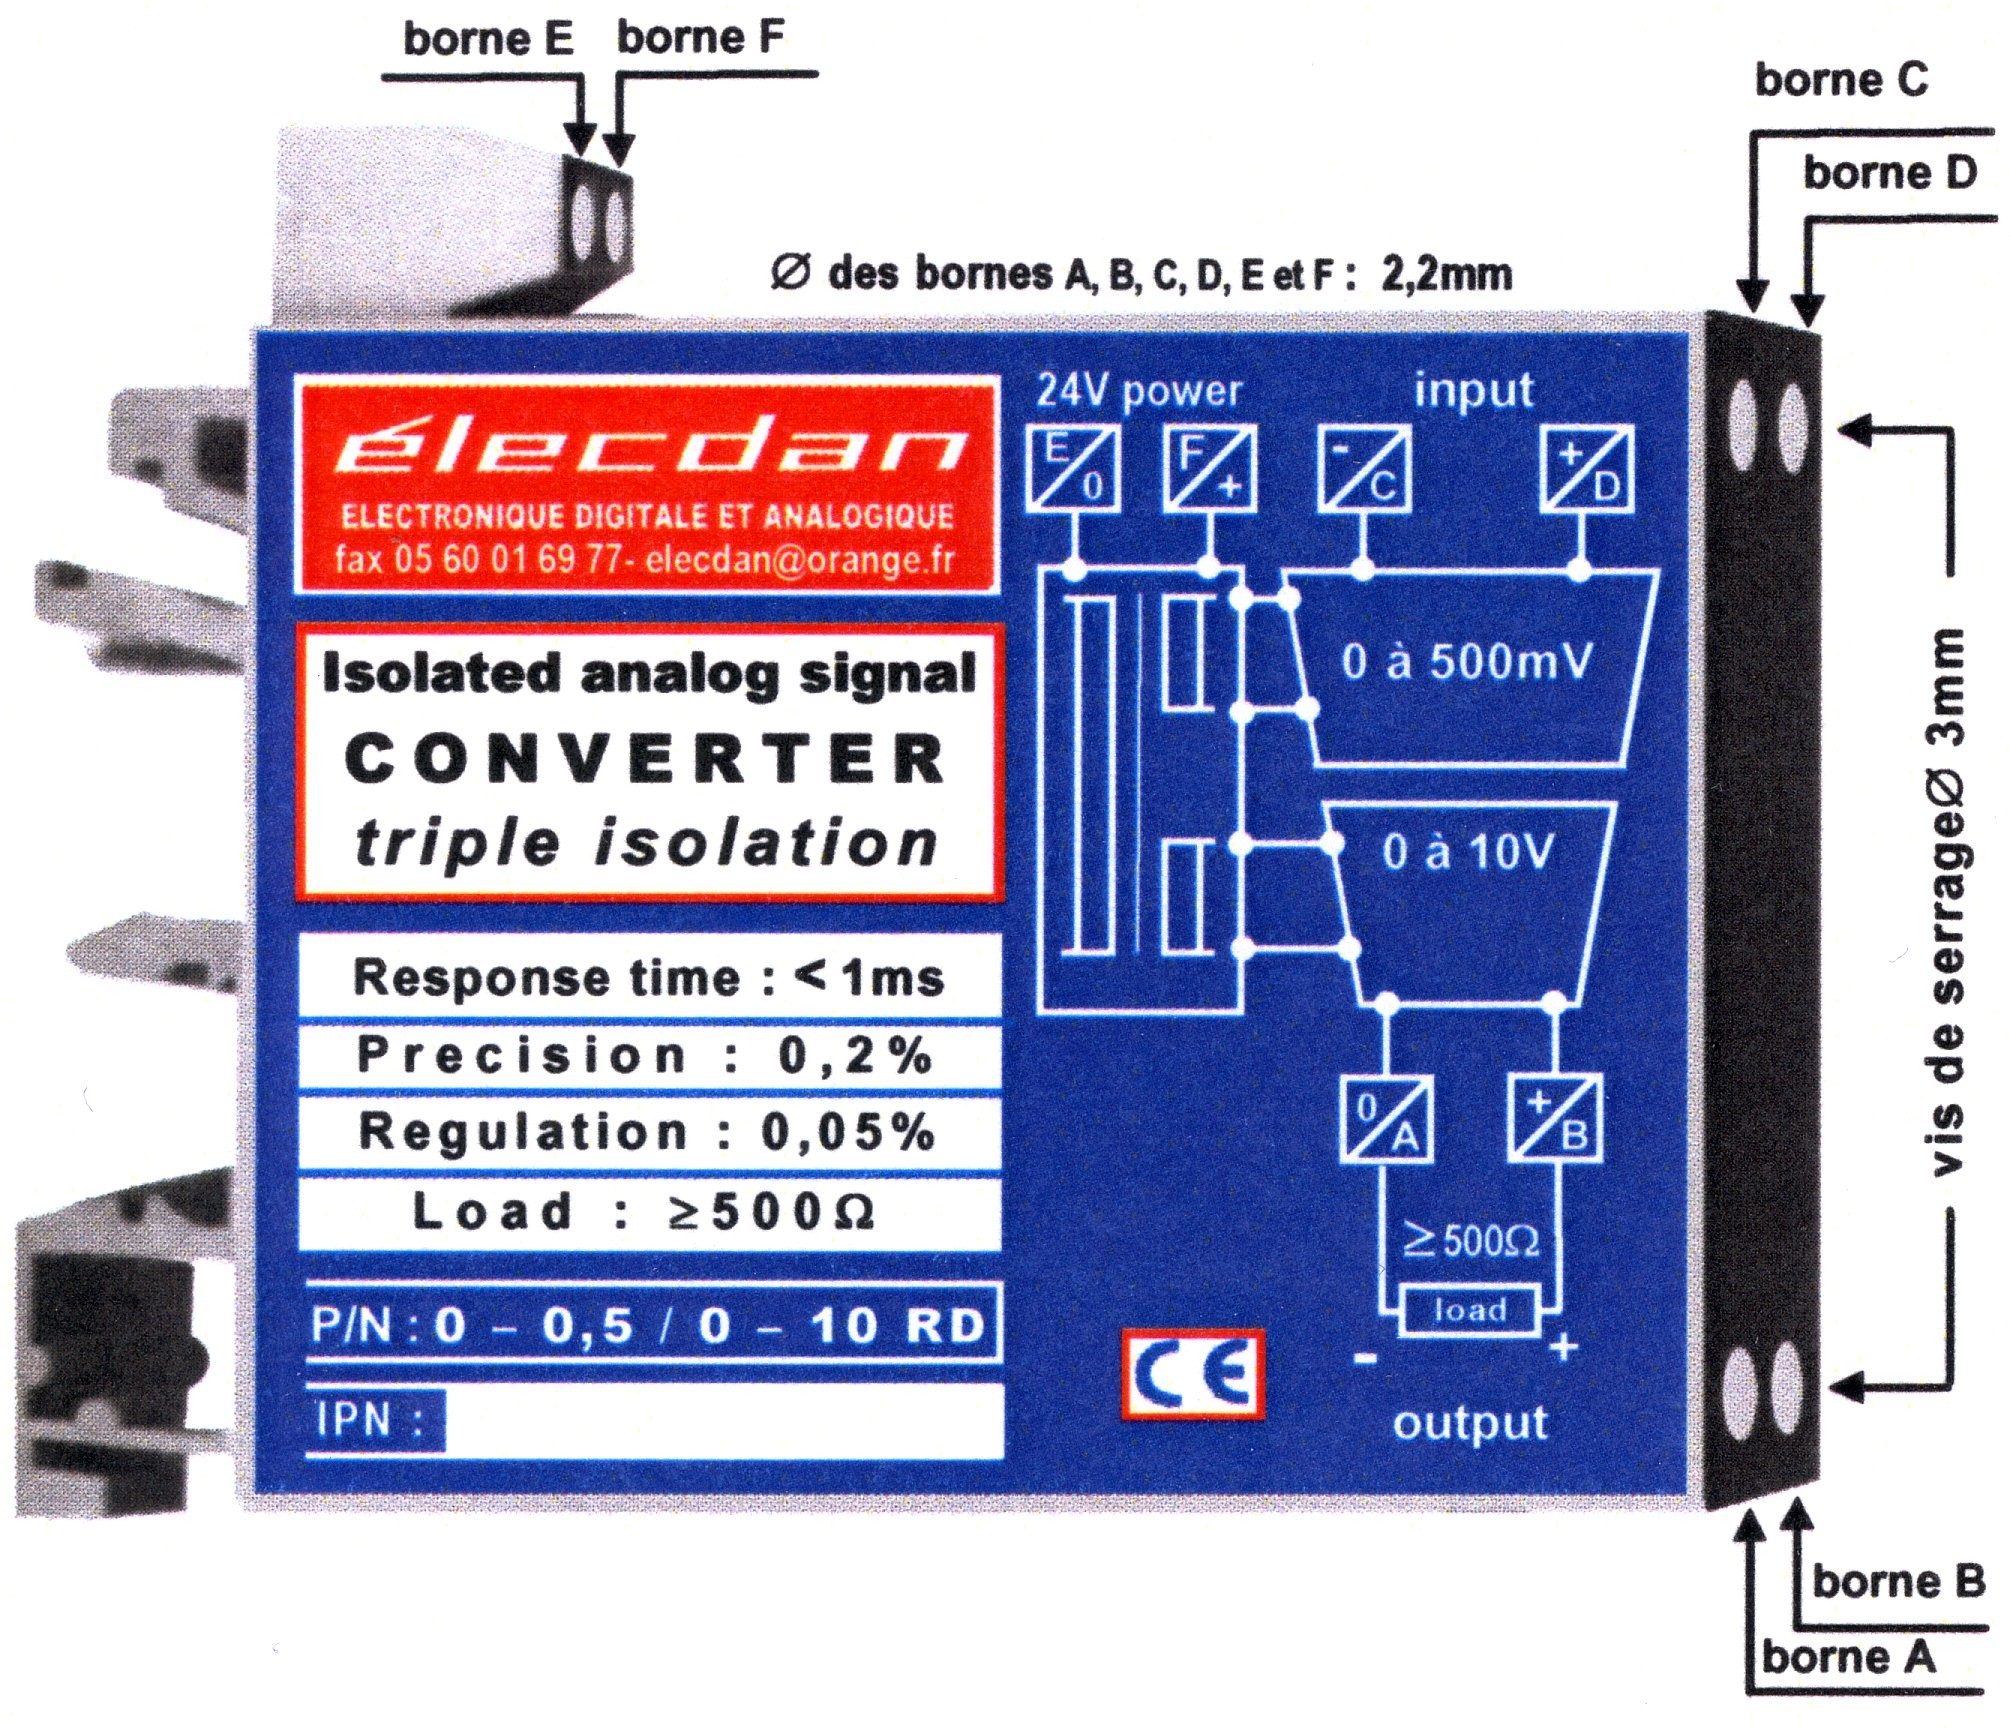 Boîtier pour RAIL DIN 66 x 53 x 12.5 mm réf. 0-0.5 / 0-10 RD